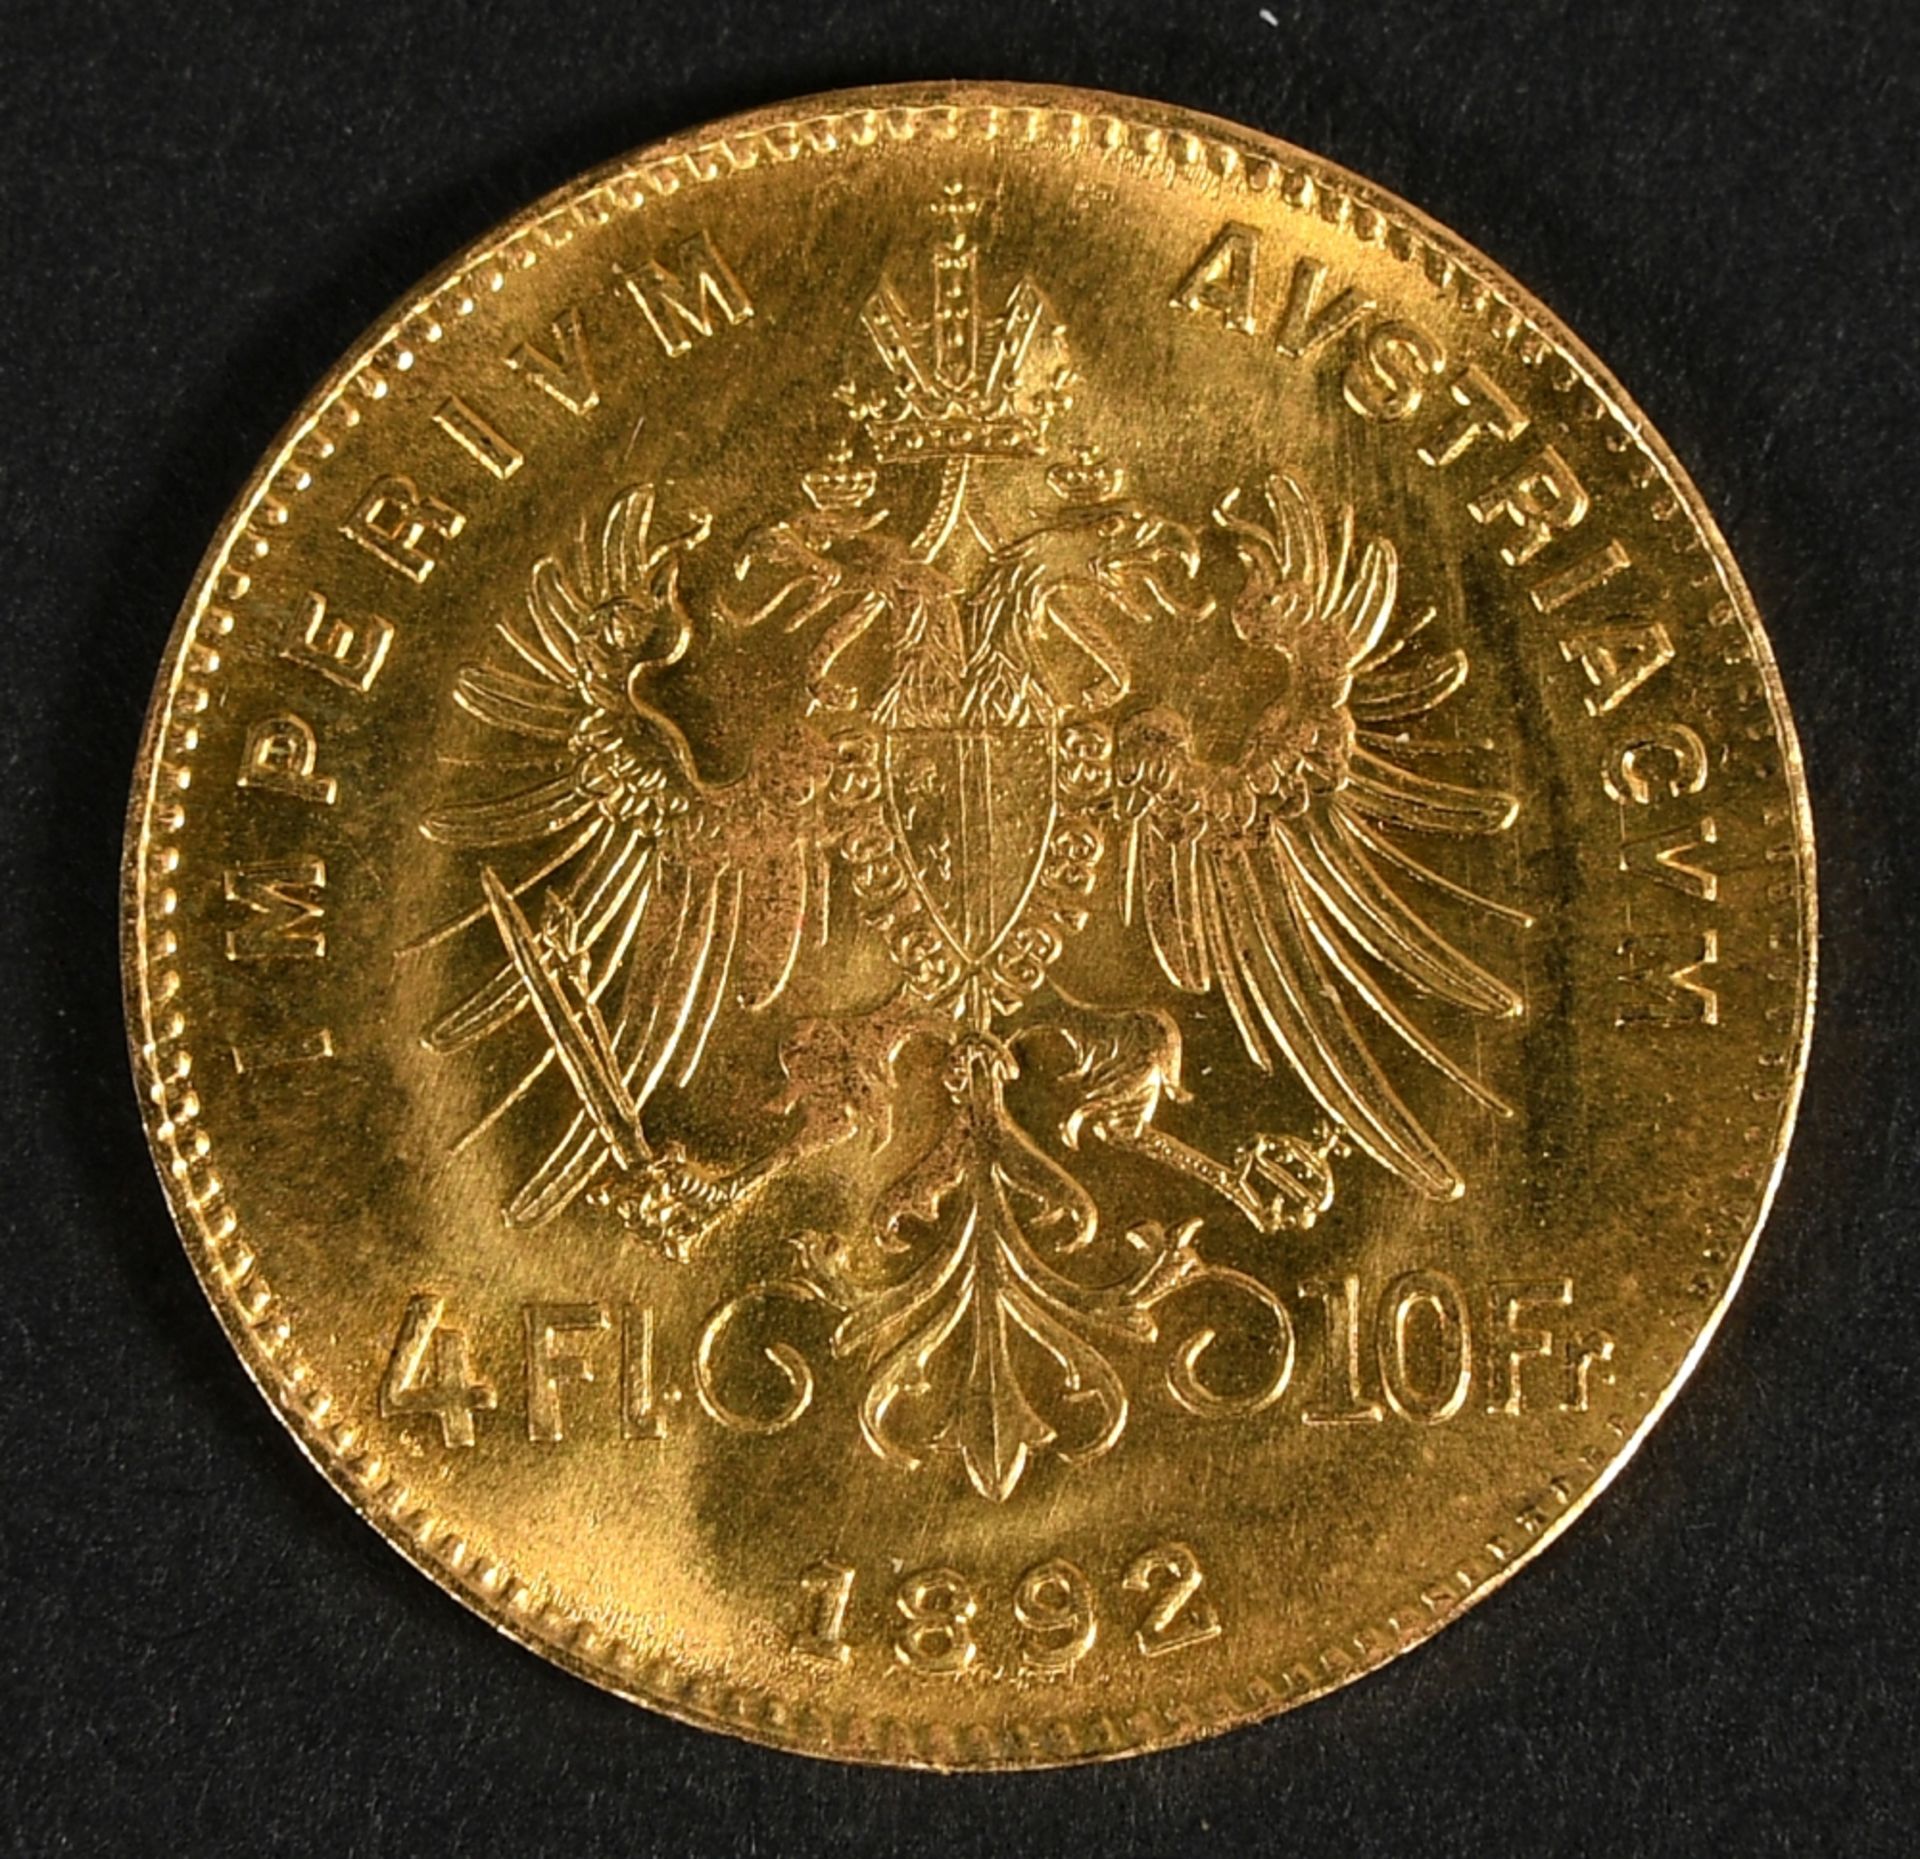 Münze - Goldmünze "4 Florin 1892" - Image 3 of 3